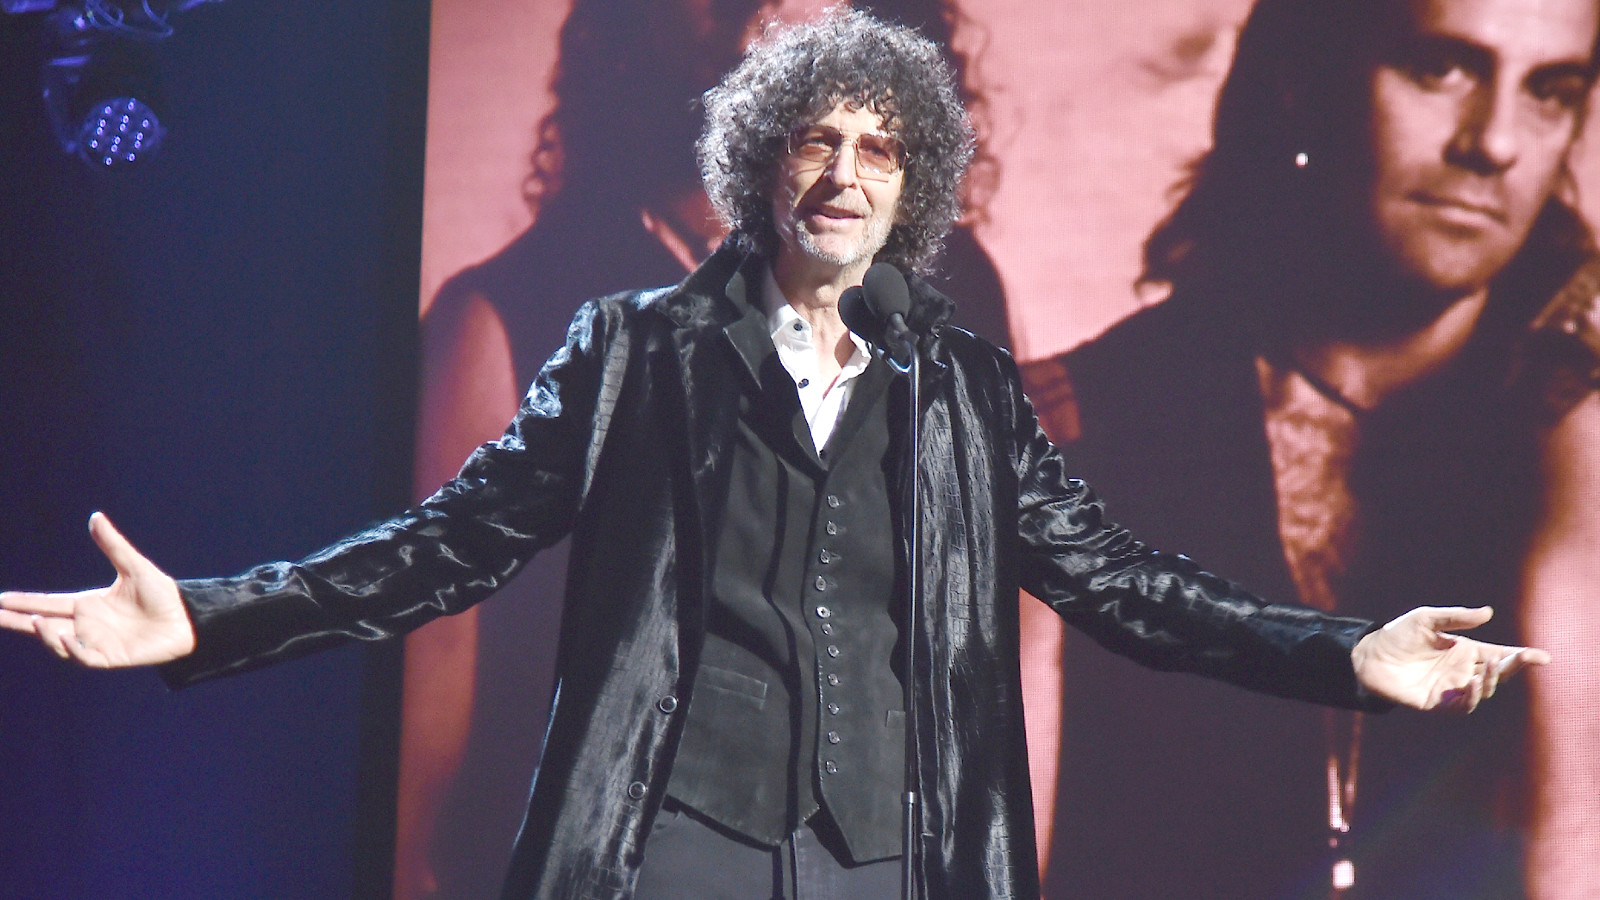 Howard Stern giới thiệu Bon Jovi trên sân khấu trong Lễ giới thiệu Rock & Roll thường niên lần thứ 33 tại Public Auditorium vào ngày 14 tháng 4 năm 2018 ở Cleveland, Ohio.